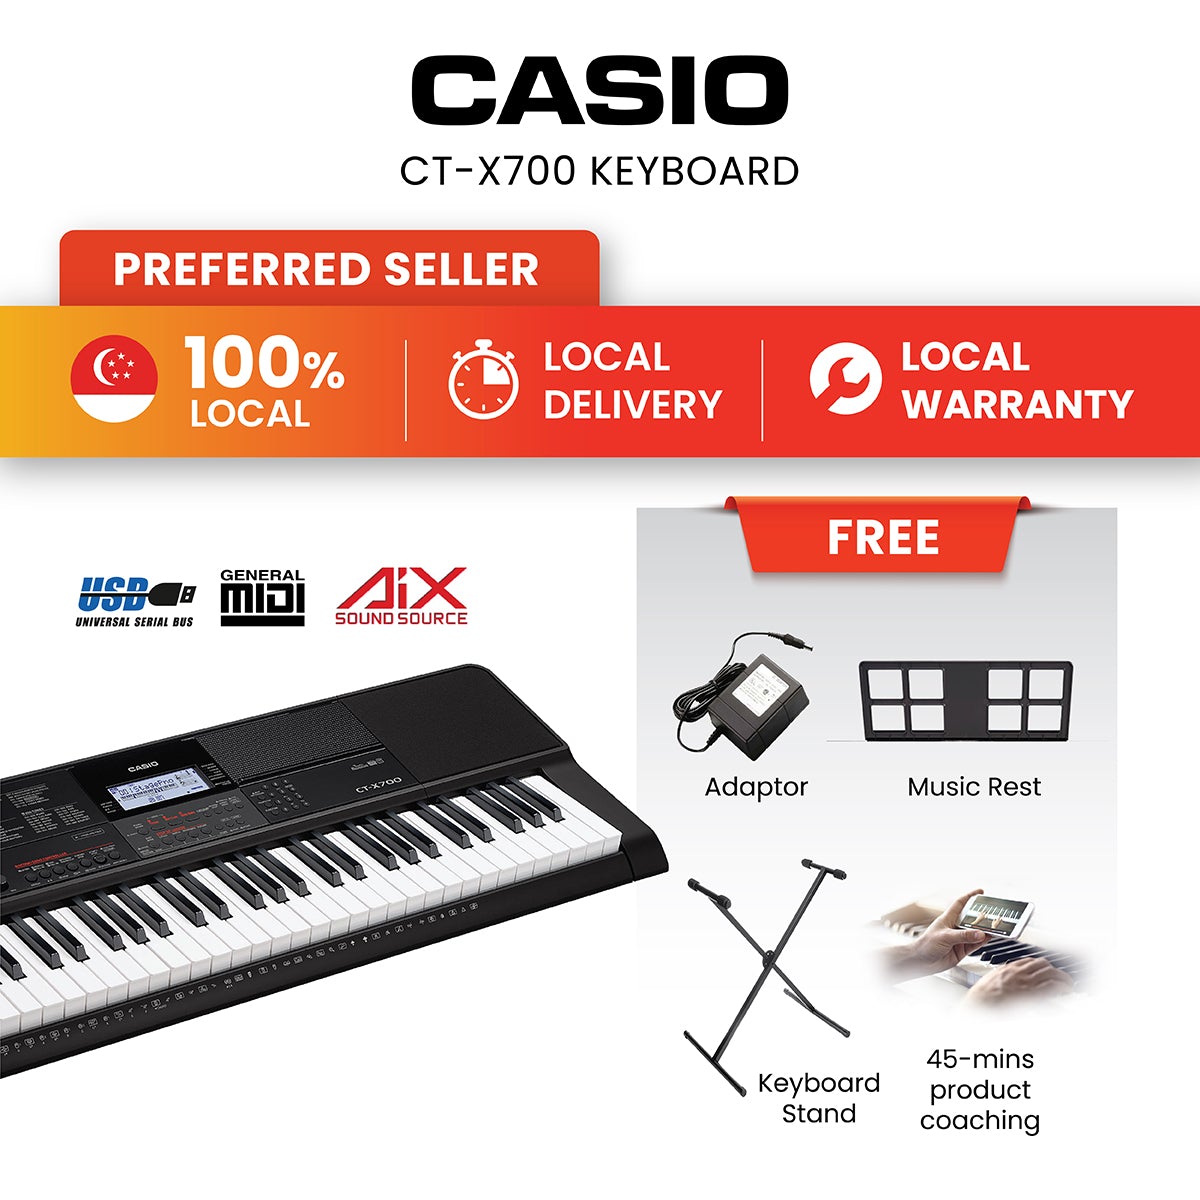 Casio CT-X700 keyboard